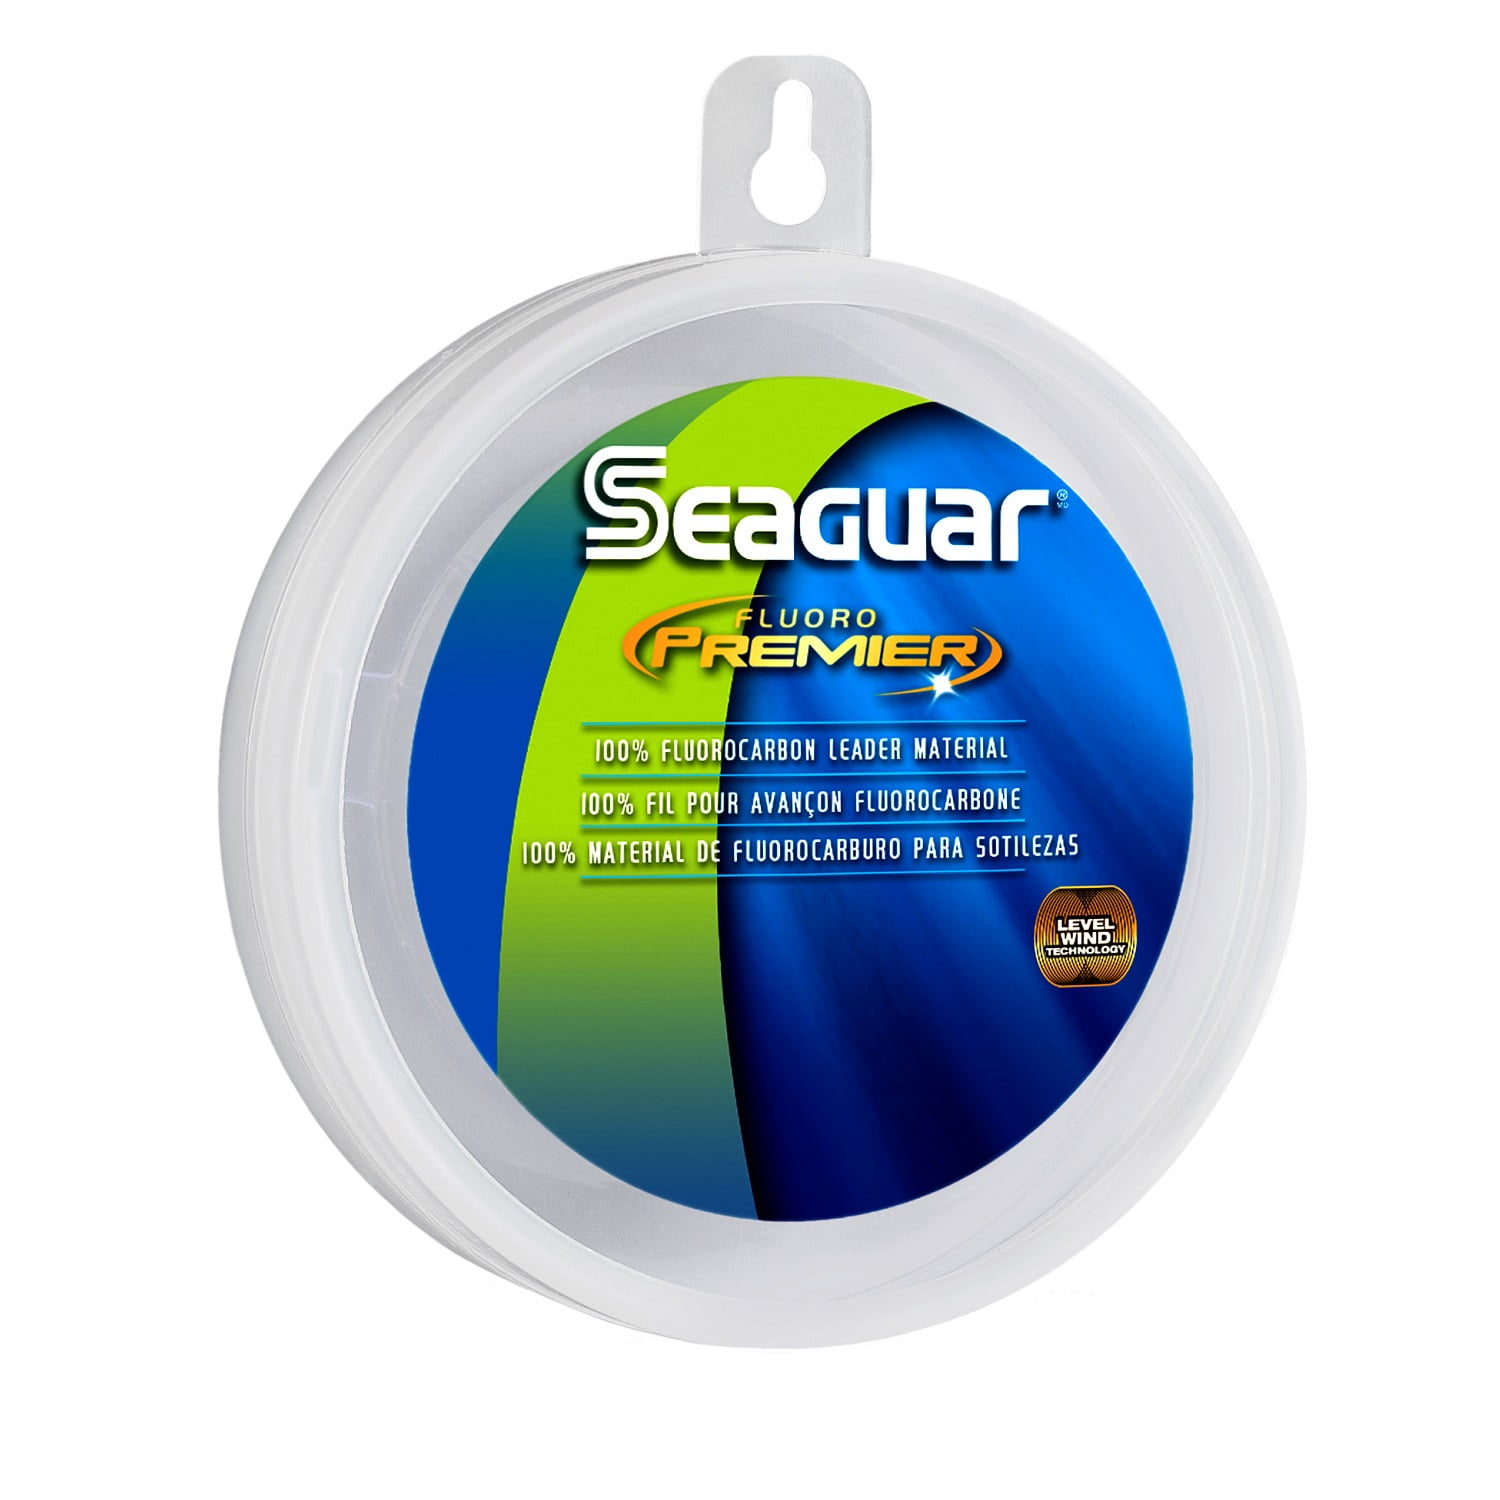 Seaguar Blue Label Fluorocarbon Leader Material 20lb 100yds for sale online 